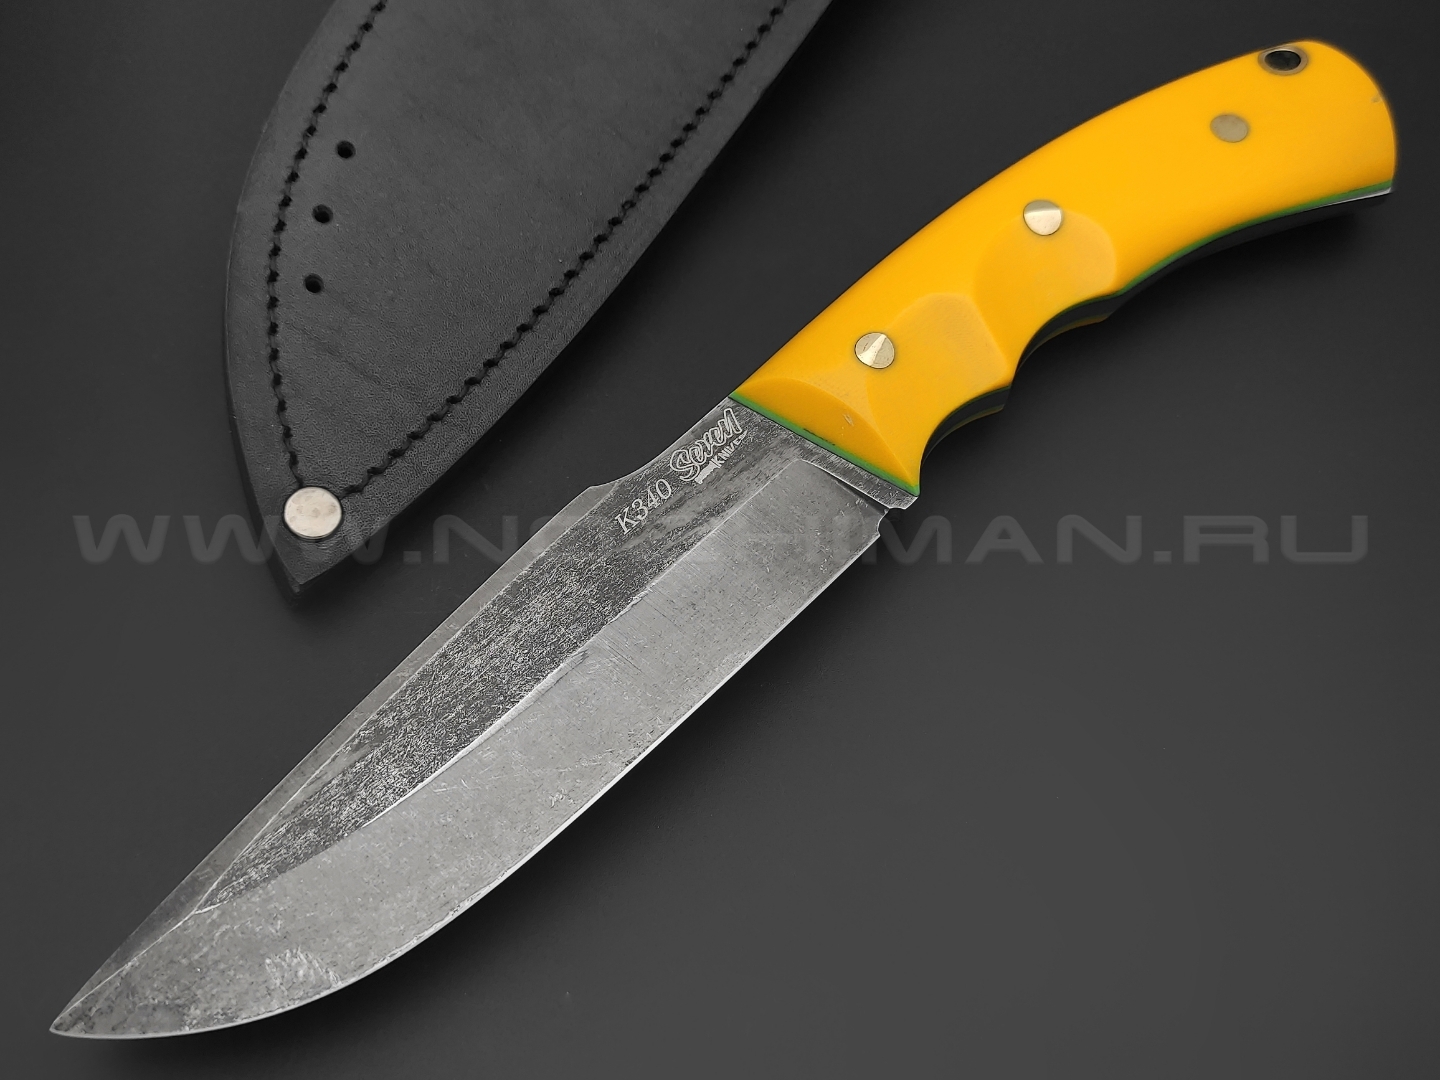 7 ножей нож Беркут сталь K340 blackwash, рукоять G10 yellow & green